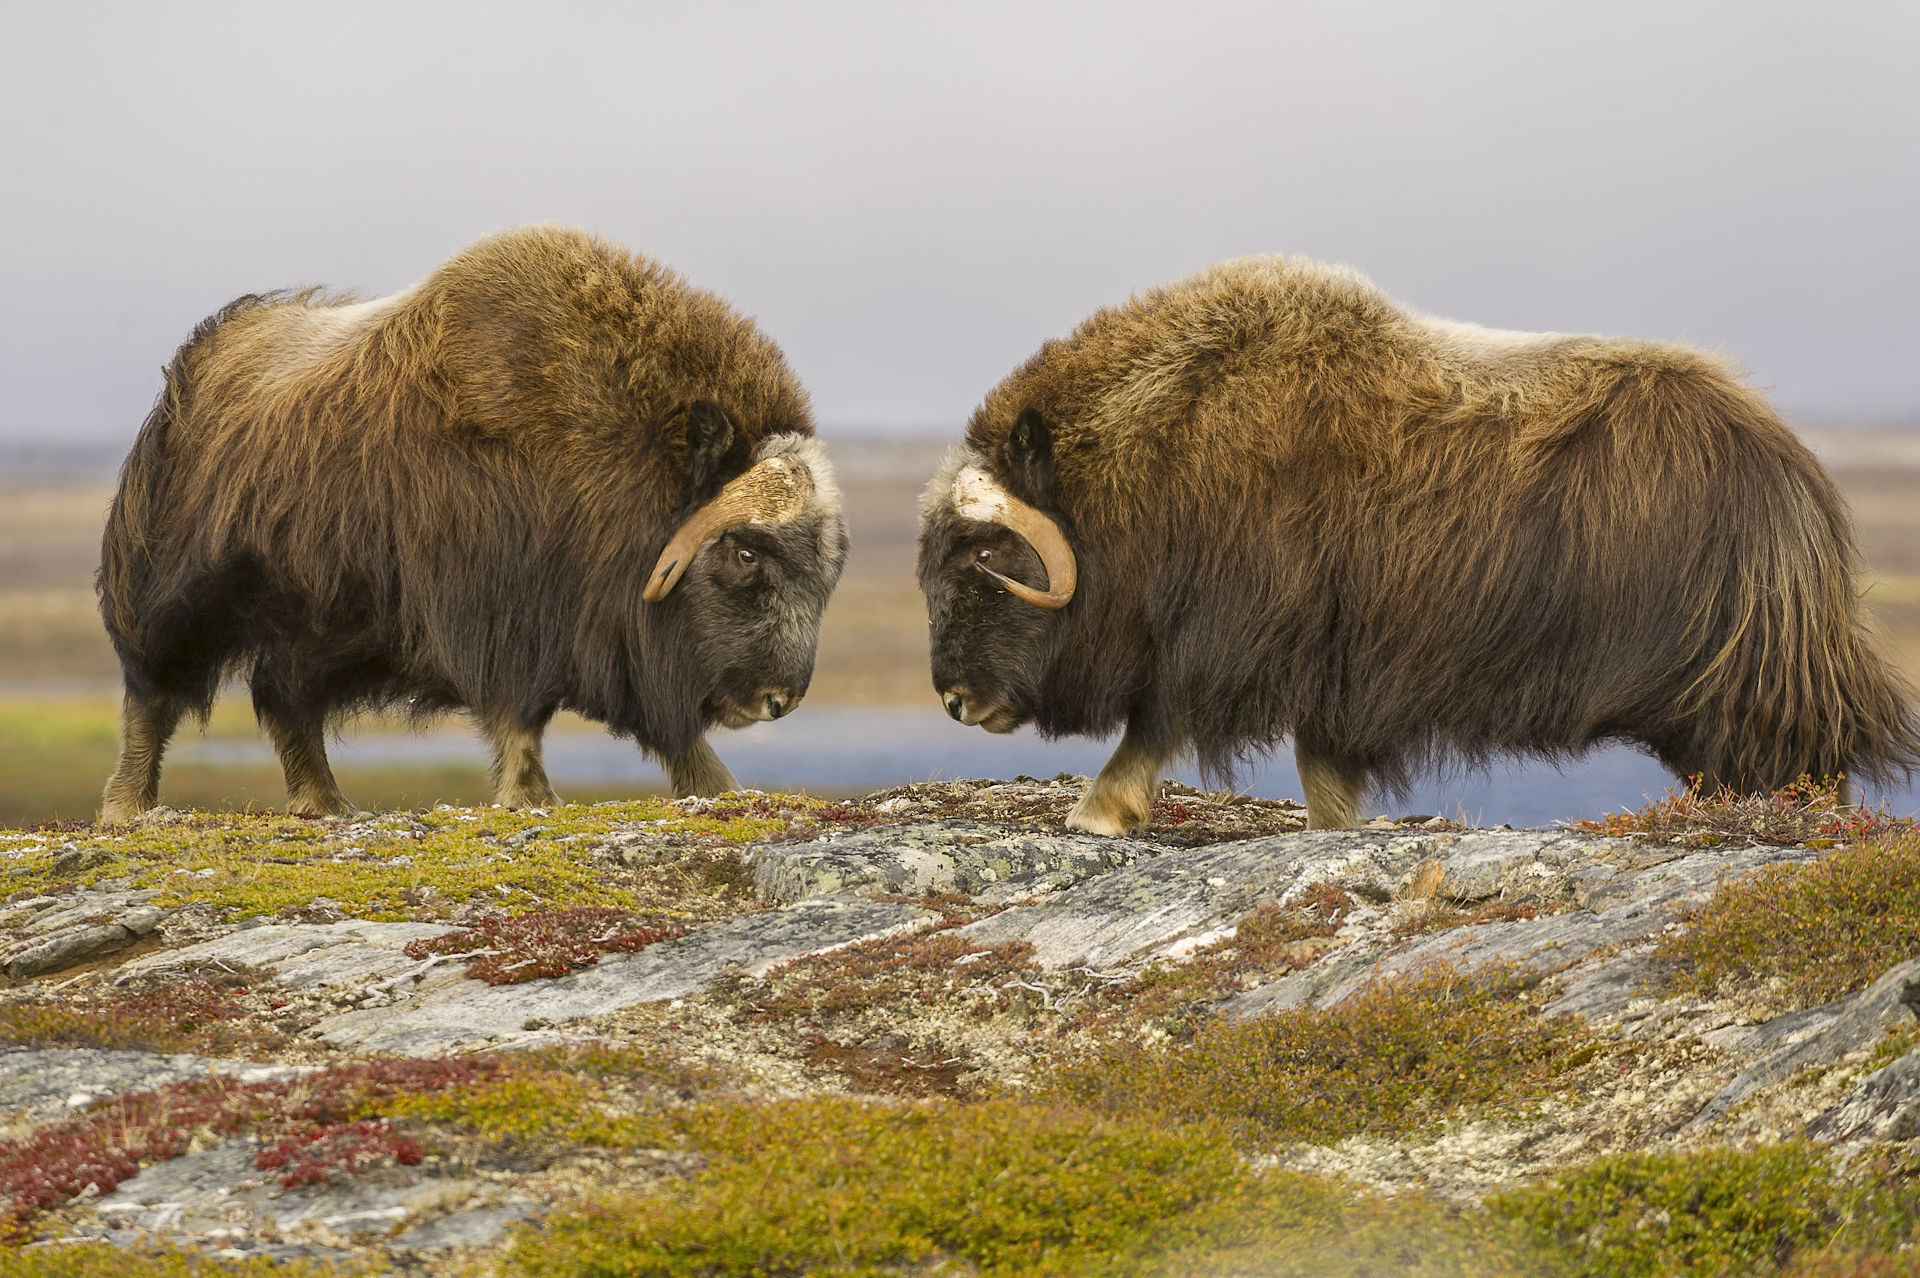 Head-butting muskoxen. Nunavik, northern Quebec